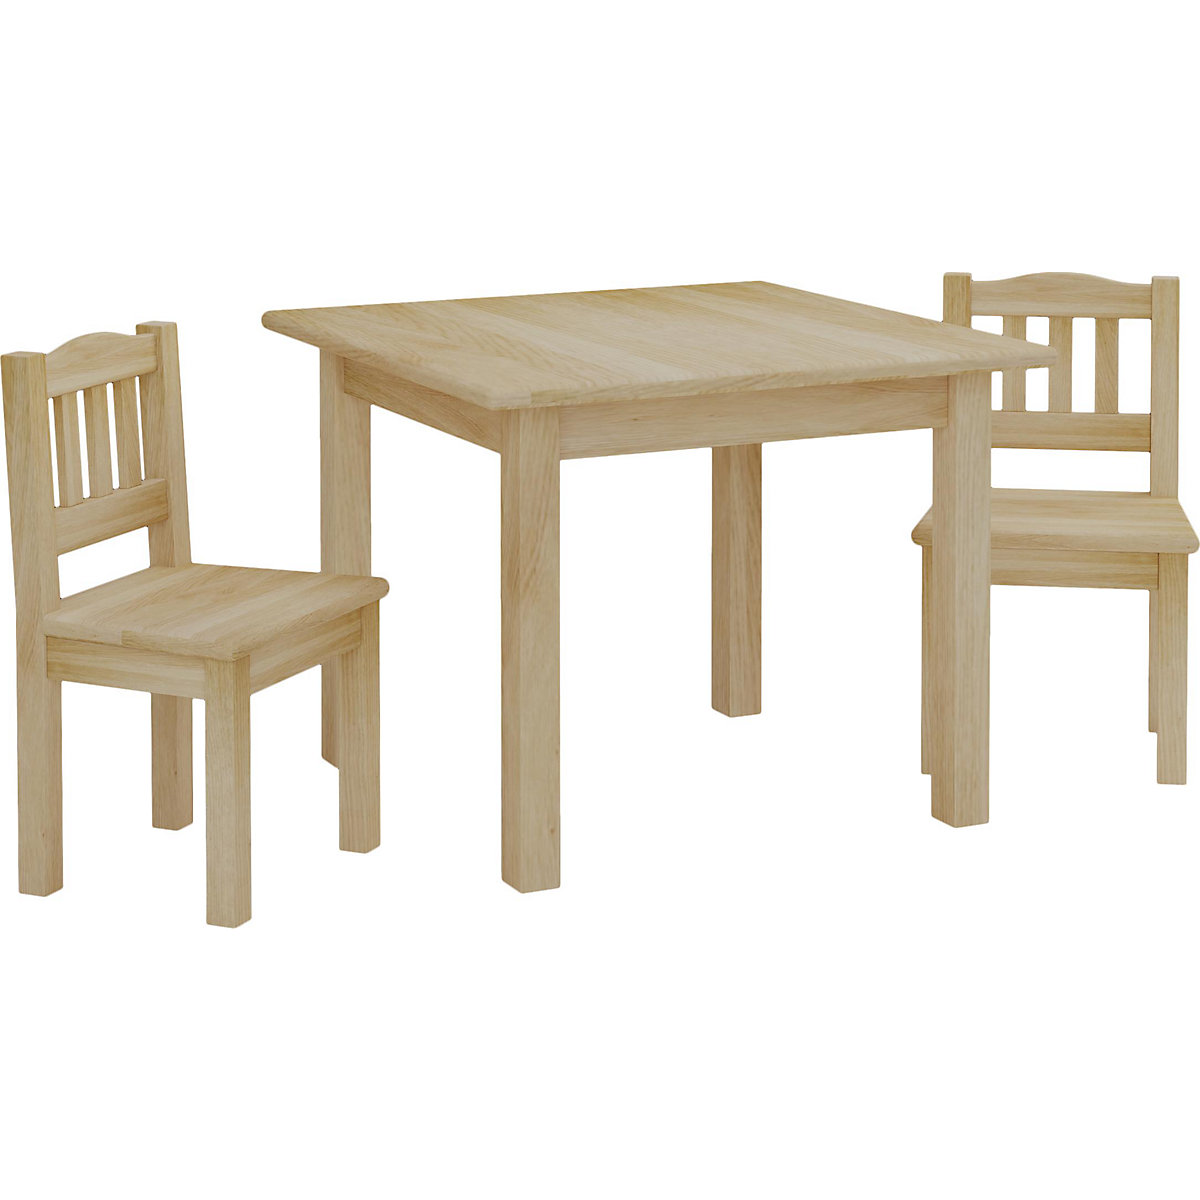 Nordville Set Kinder Tisch + 2 Stühle aus Kiefernholz Sehr Stabil Leicht Sicher Abgeschliffene Kanten Ideal fürs Kinderzimmer Jungen und Mädchen (Natürlich)